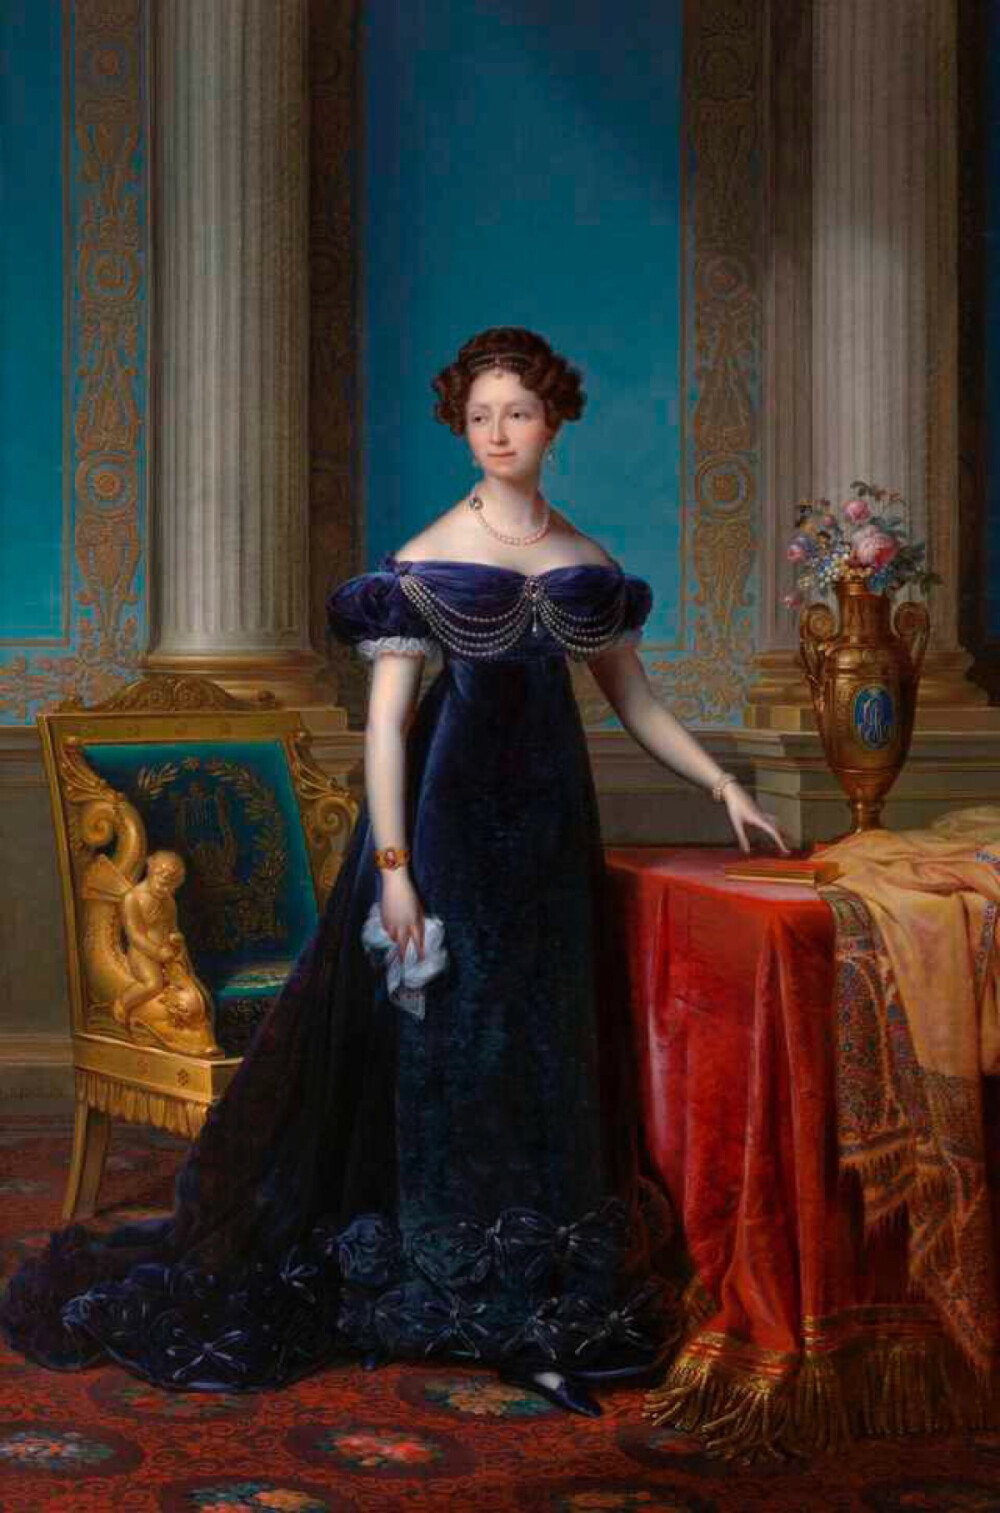 安娜帕夫诺夫娜,俄罗斯沙皇保罗一世的女儿,作为未来国王威廉二世新娘